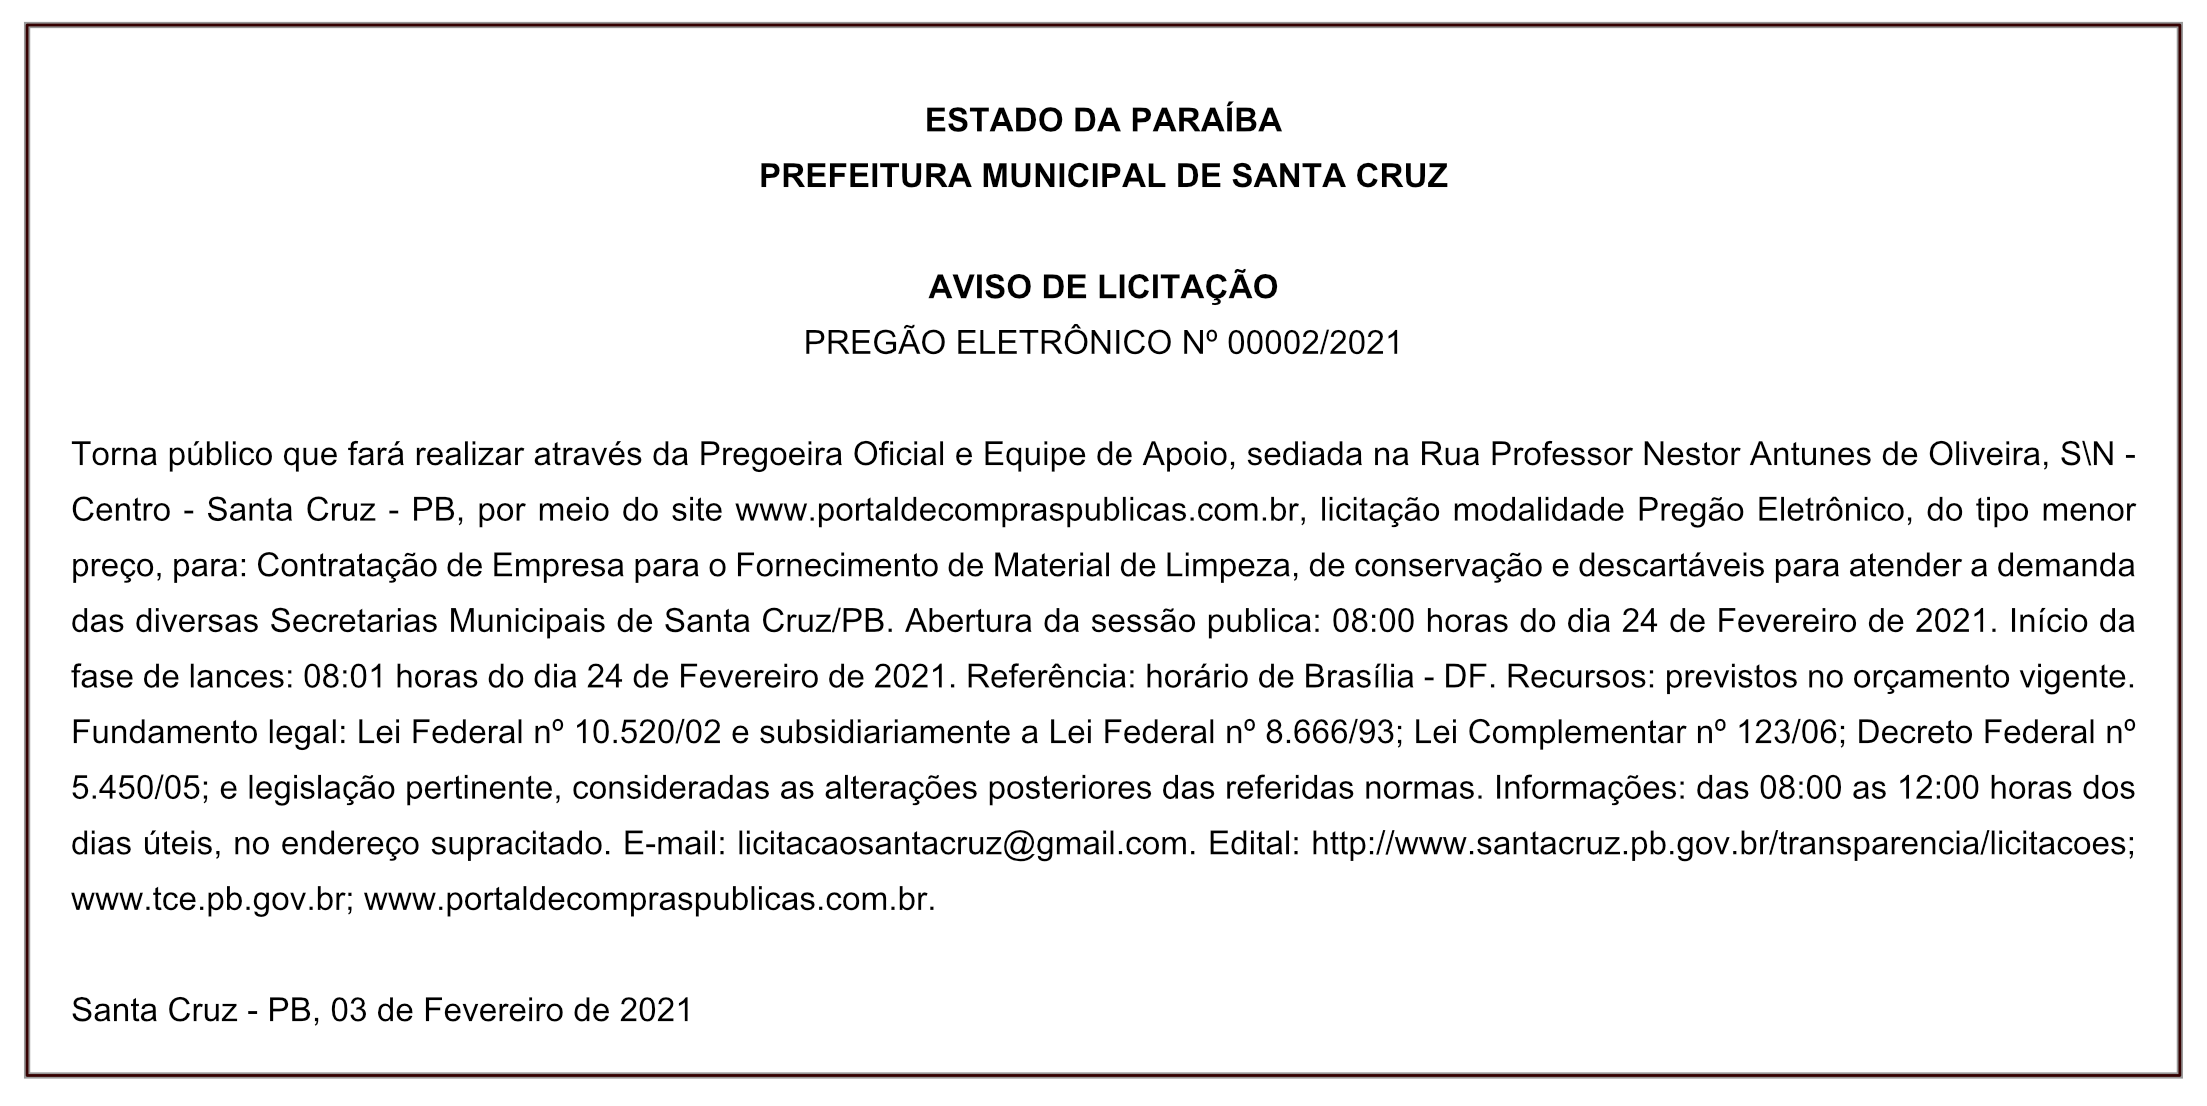 PREFEITURA MUNICIPAL DE SANTA CRUZ – AVISO DE LICITAÇÃO – PREGÃO ELETRÔNICO Nº 00002/2021